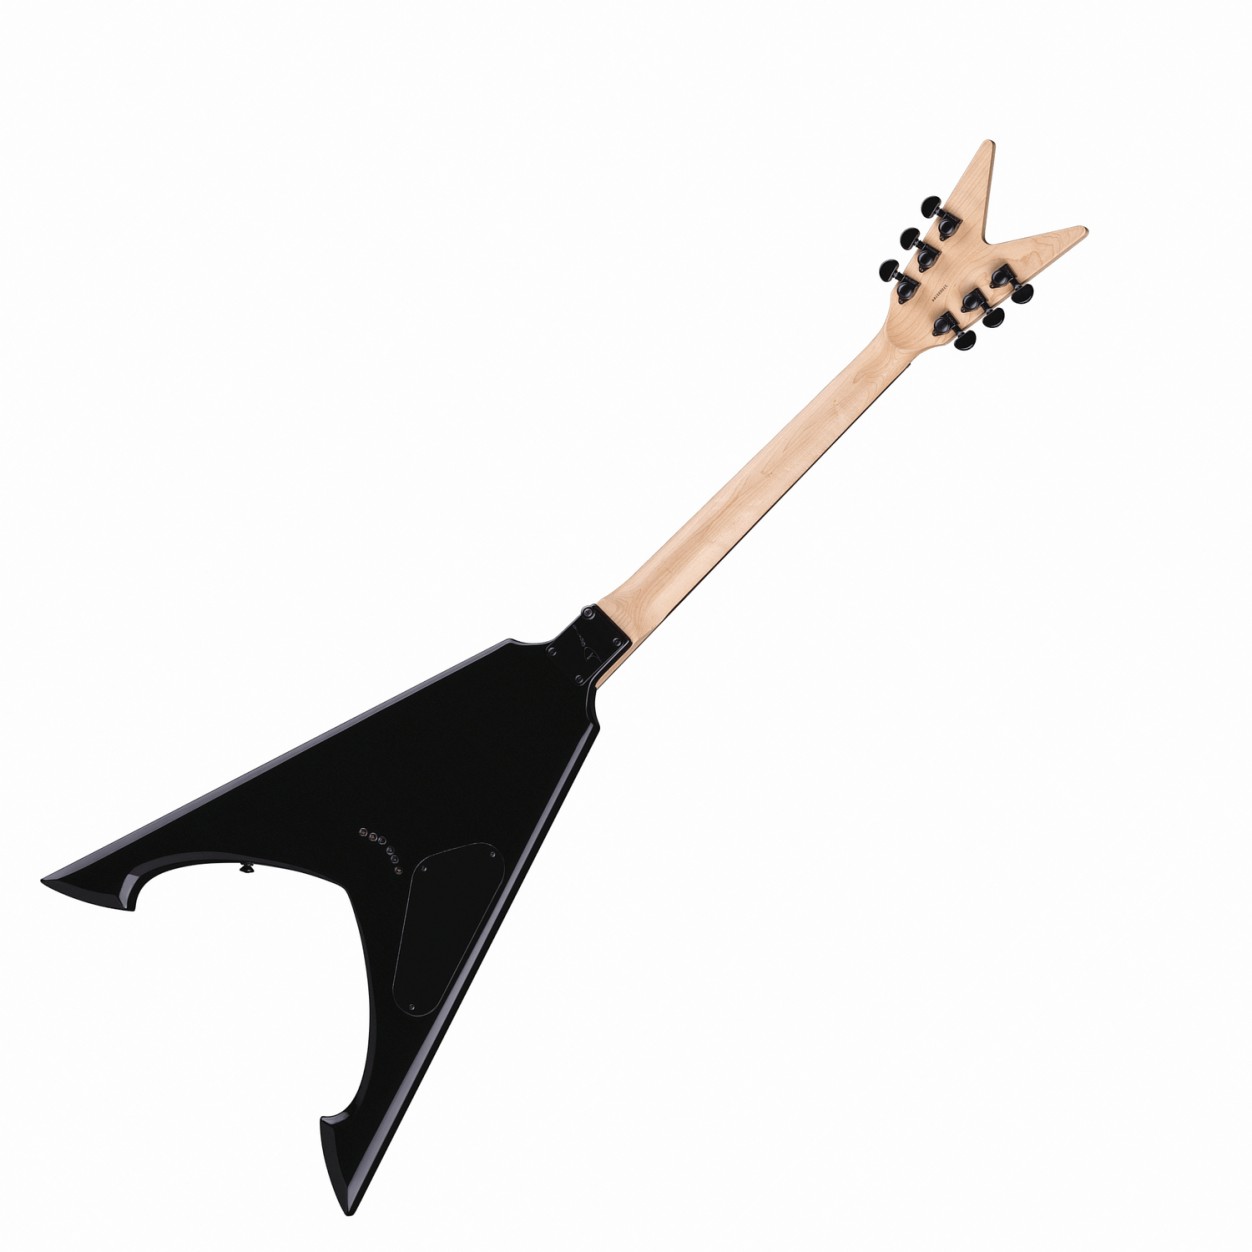 Dean MAS TyranTX WAR электрогитара, форма «стрела», цвет черный